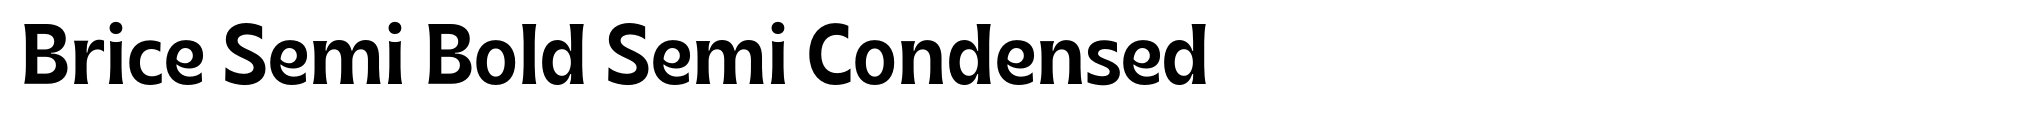 Brice Semi Bold Semi Condensed image